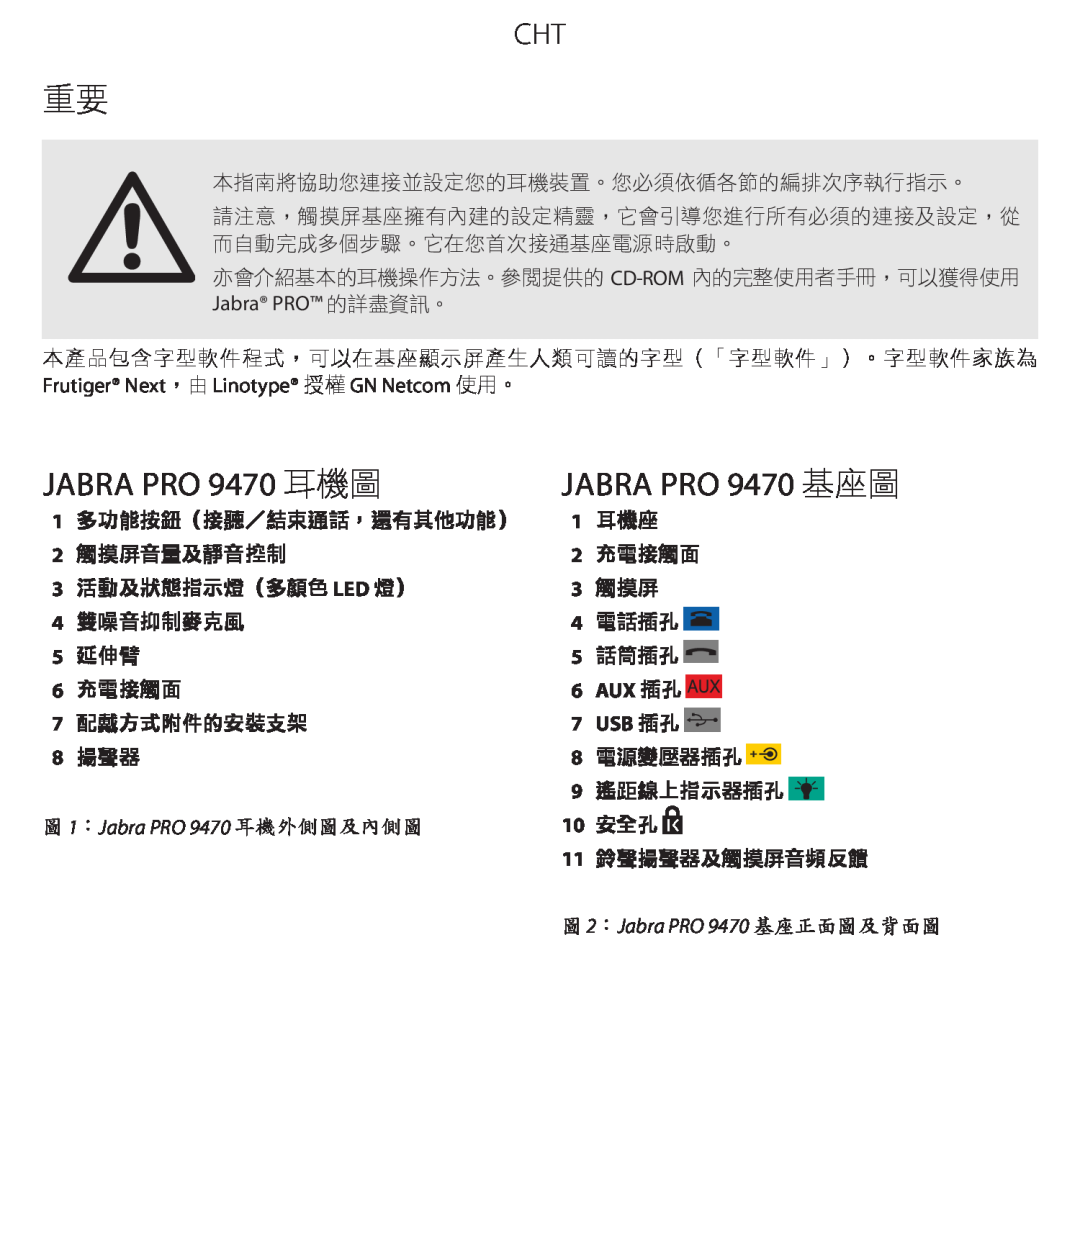 Jabra quick start auX 插孔, 10 安全孔, JABRA PRO 9470 耳機圖, JABRA PRO 9470 基座圖, 圖1：Jabra PRO 9470 耳機外側圖及內側圖 